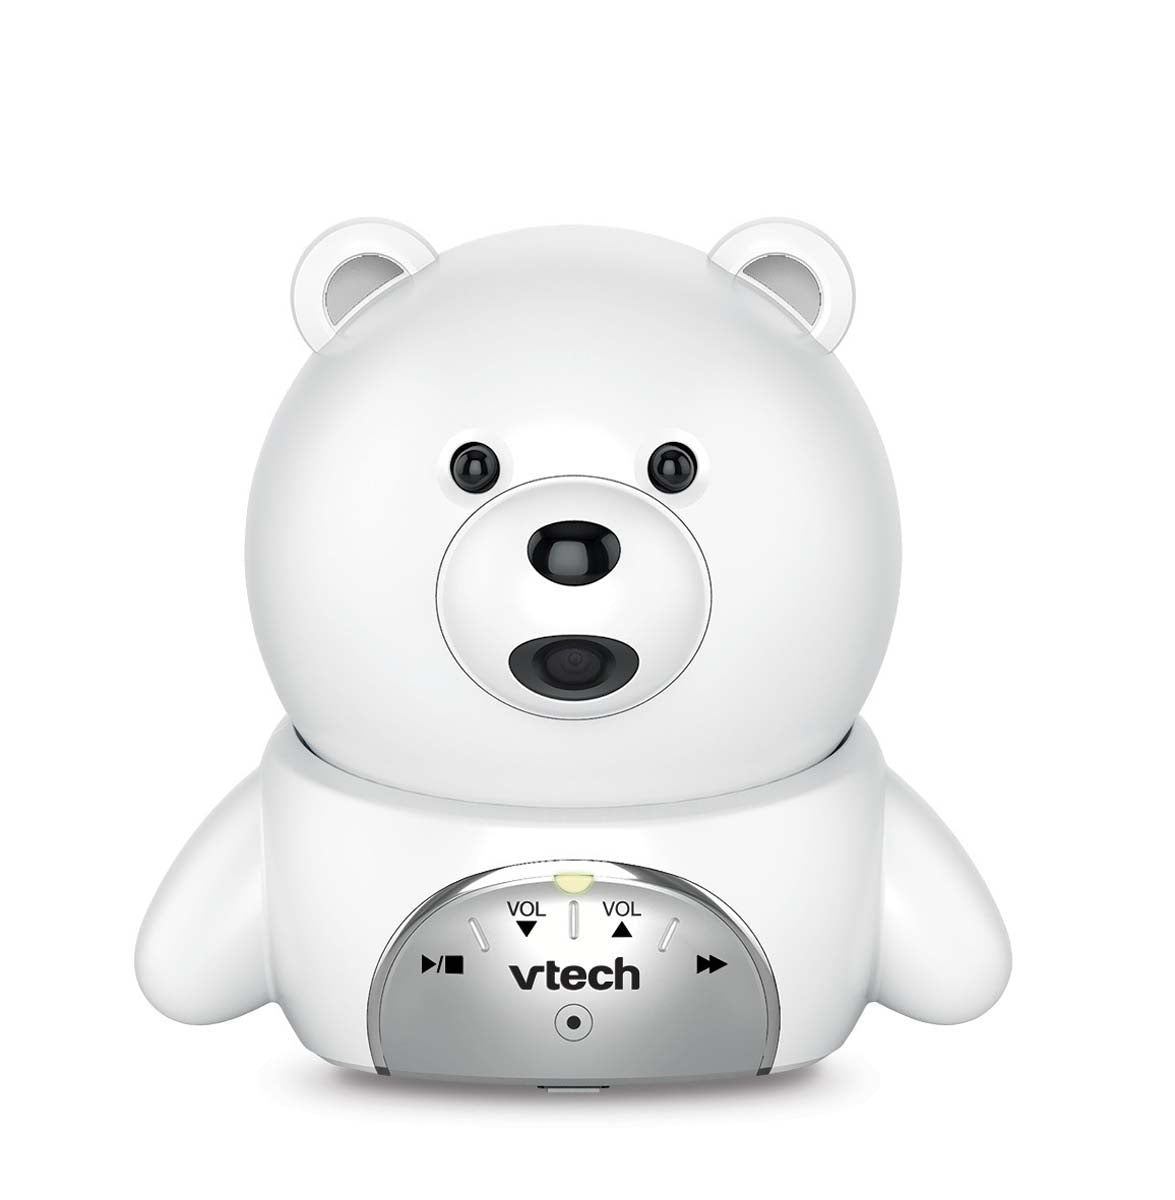 De babyfoon BM 5150 is de verbeterde versie van de bekende VTech de BM4200. De babyfoon heeft een beter en groter kleurenscherm (5-inch) en de camera heeft de vorm van een beer. Groot bereik binnen- en buitenshuis. VanZus.